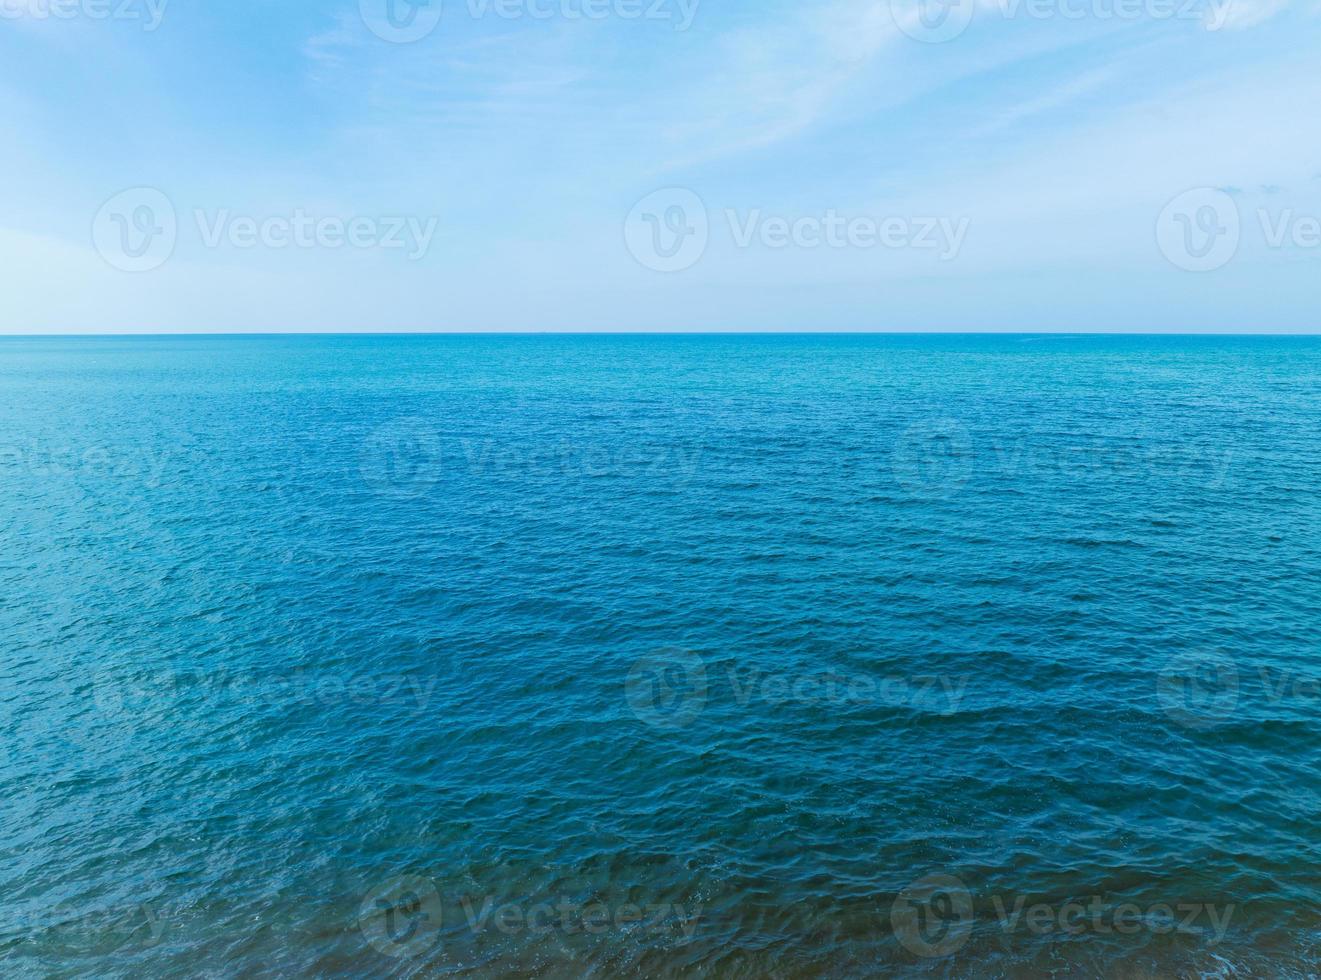 zeeoppervlak luchtfoto, vogelperspectief foto van blauwe golven en wateroppervlak textuur blauwe zee achtergrond prachtige natuur geweldig uitzicht zee achtergrond